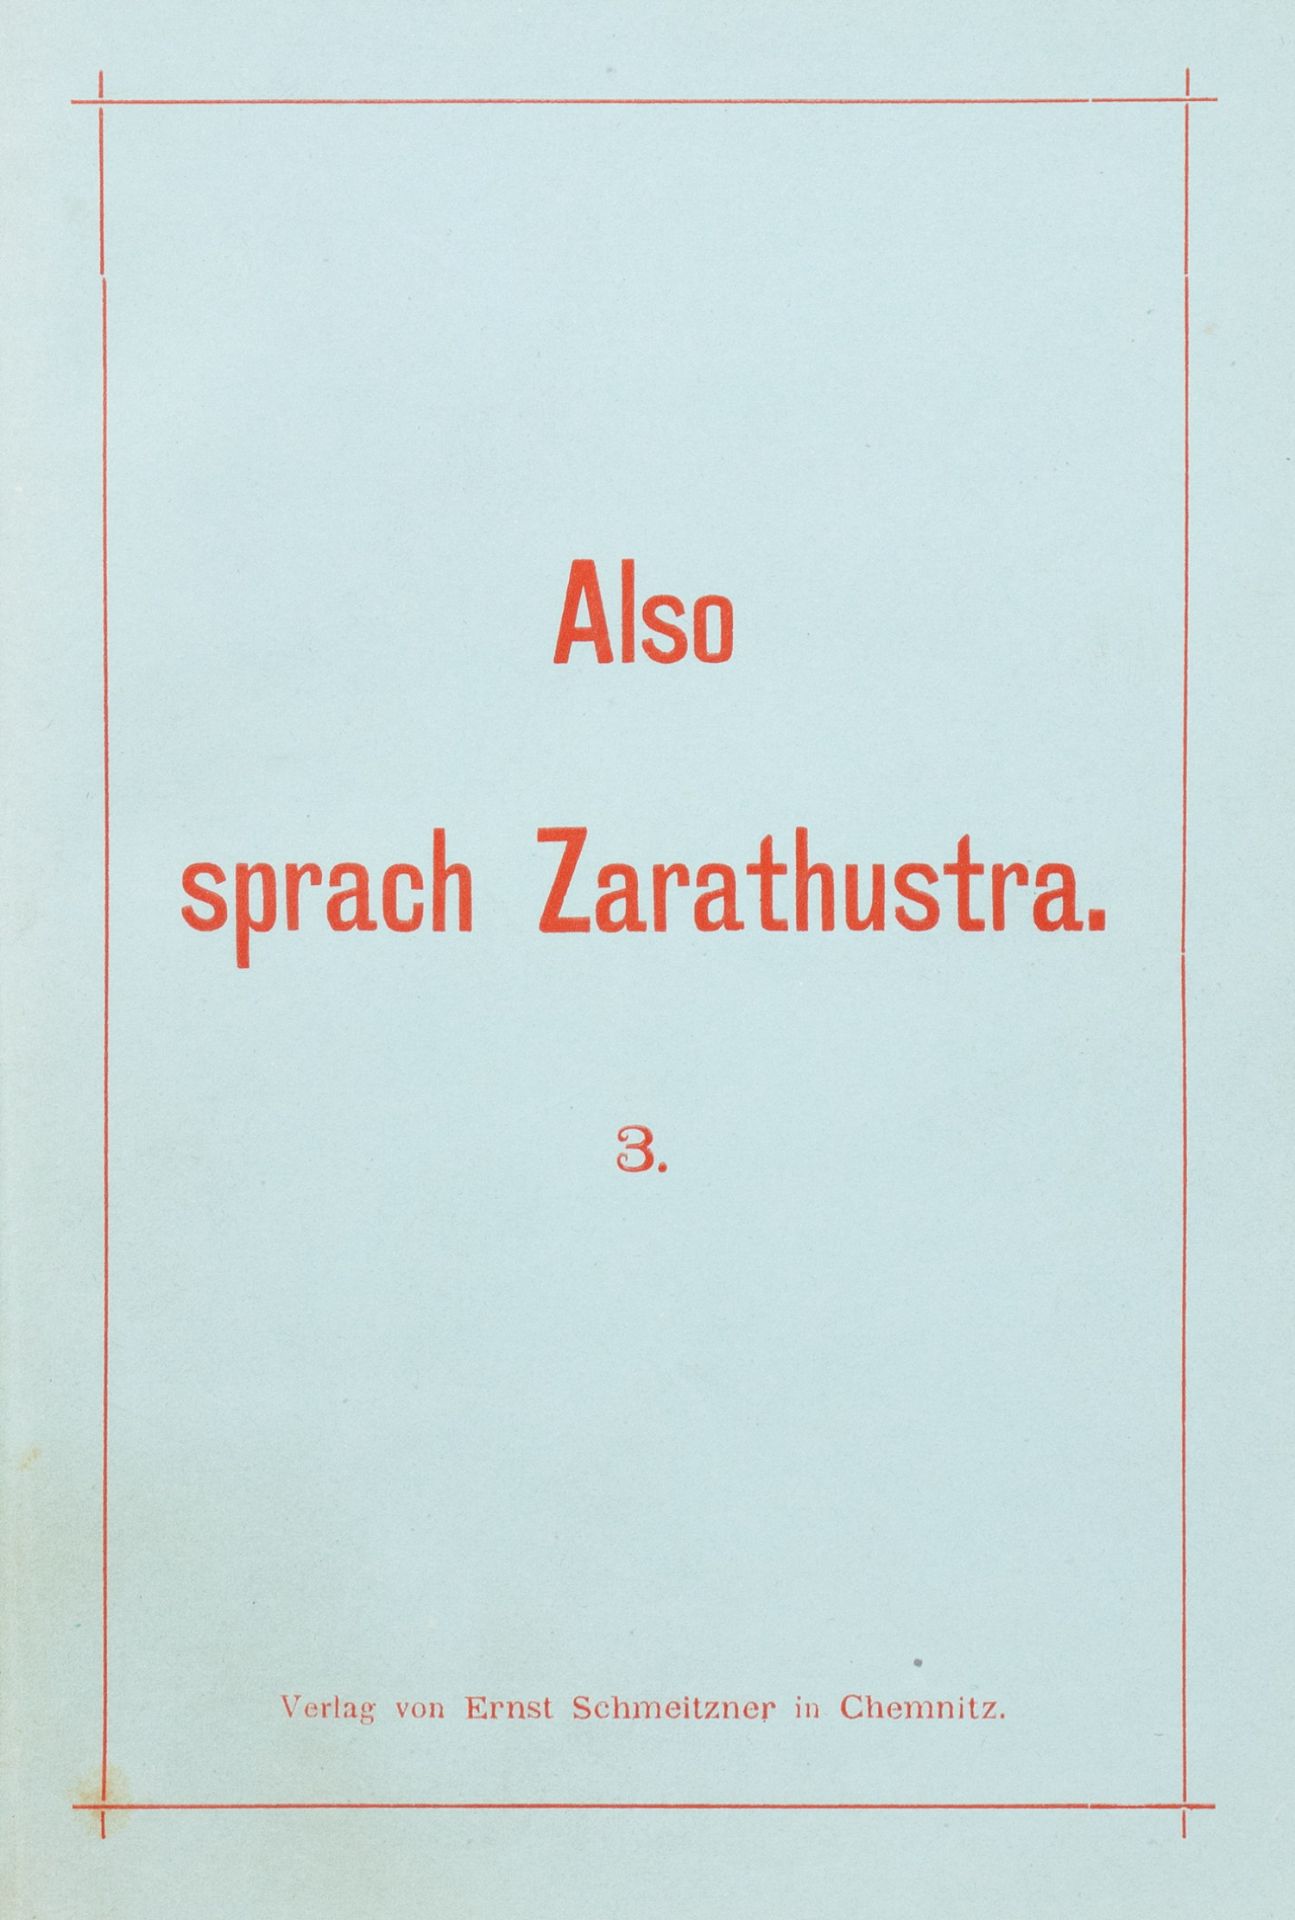 Fr. Nietzsche. Also sprach Zarathustra. 1-3 - Image 3 of 7